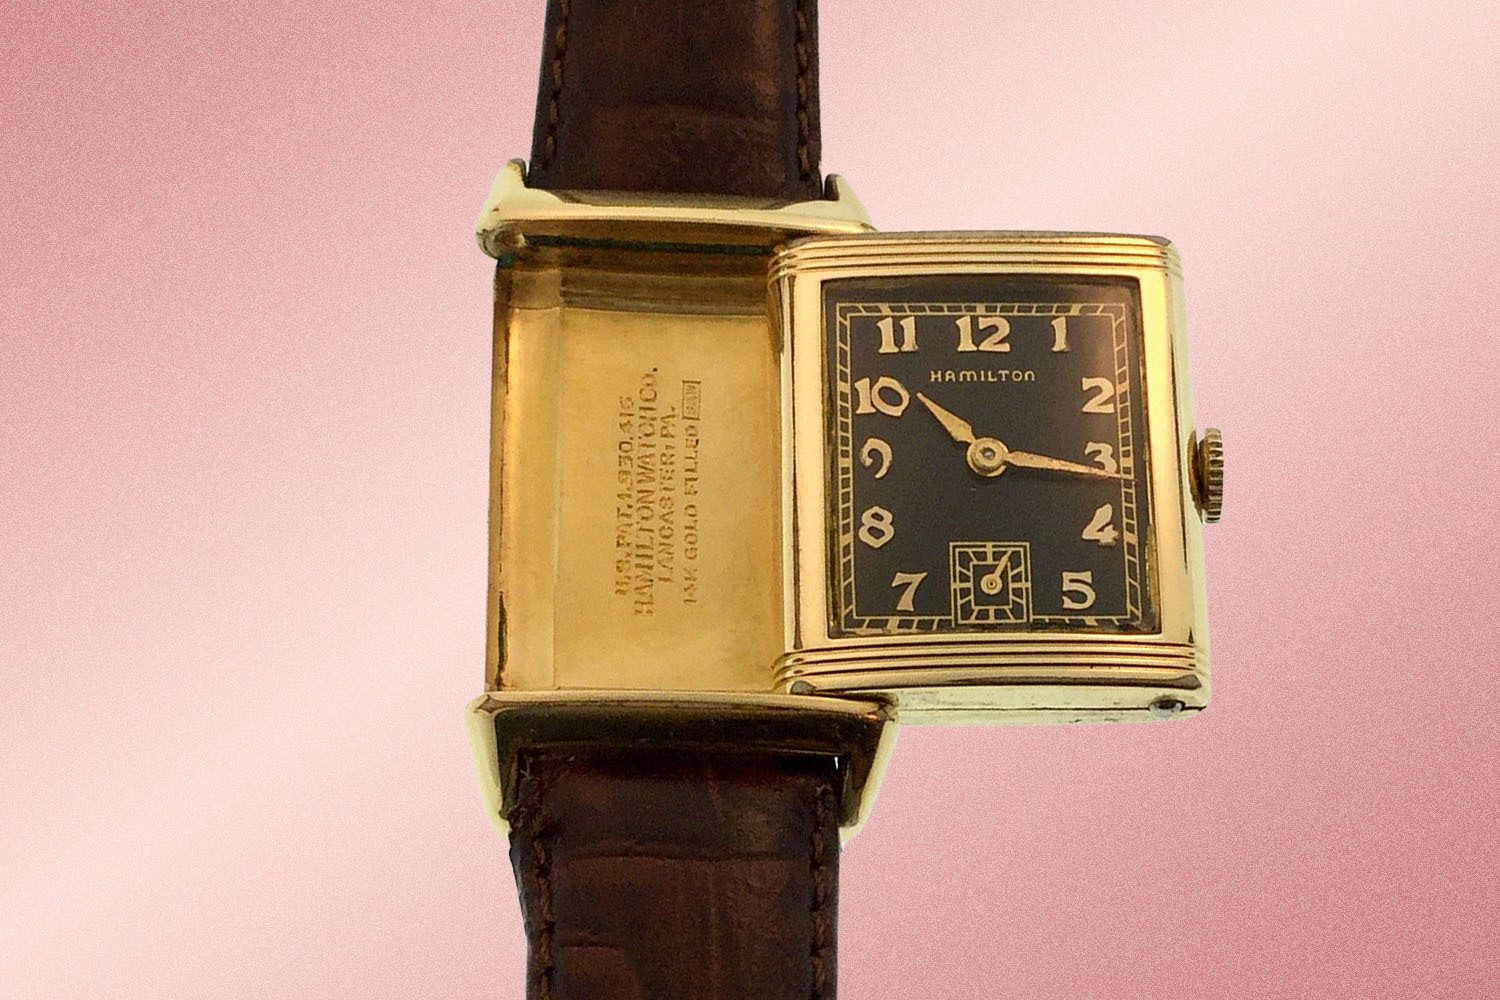 Men's 1930s Hamilton Otis Watch available on eBay